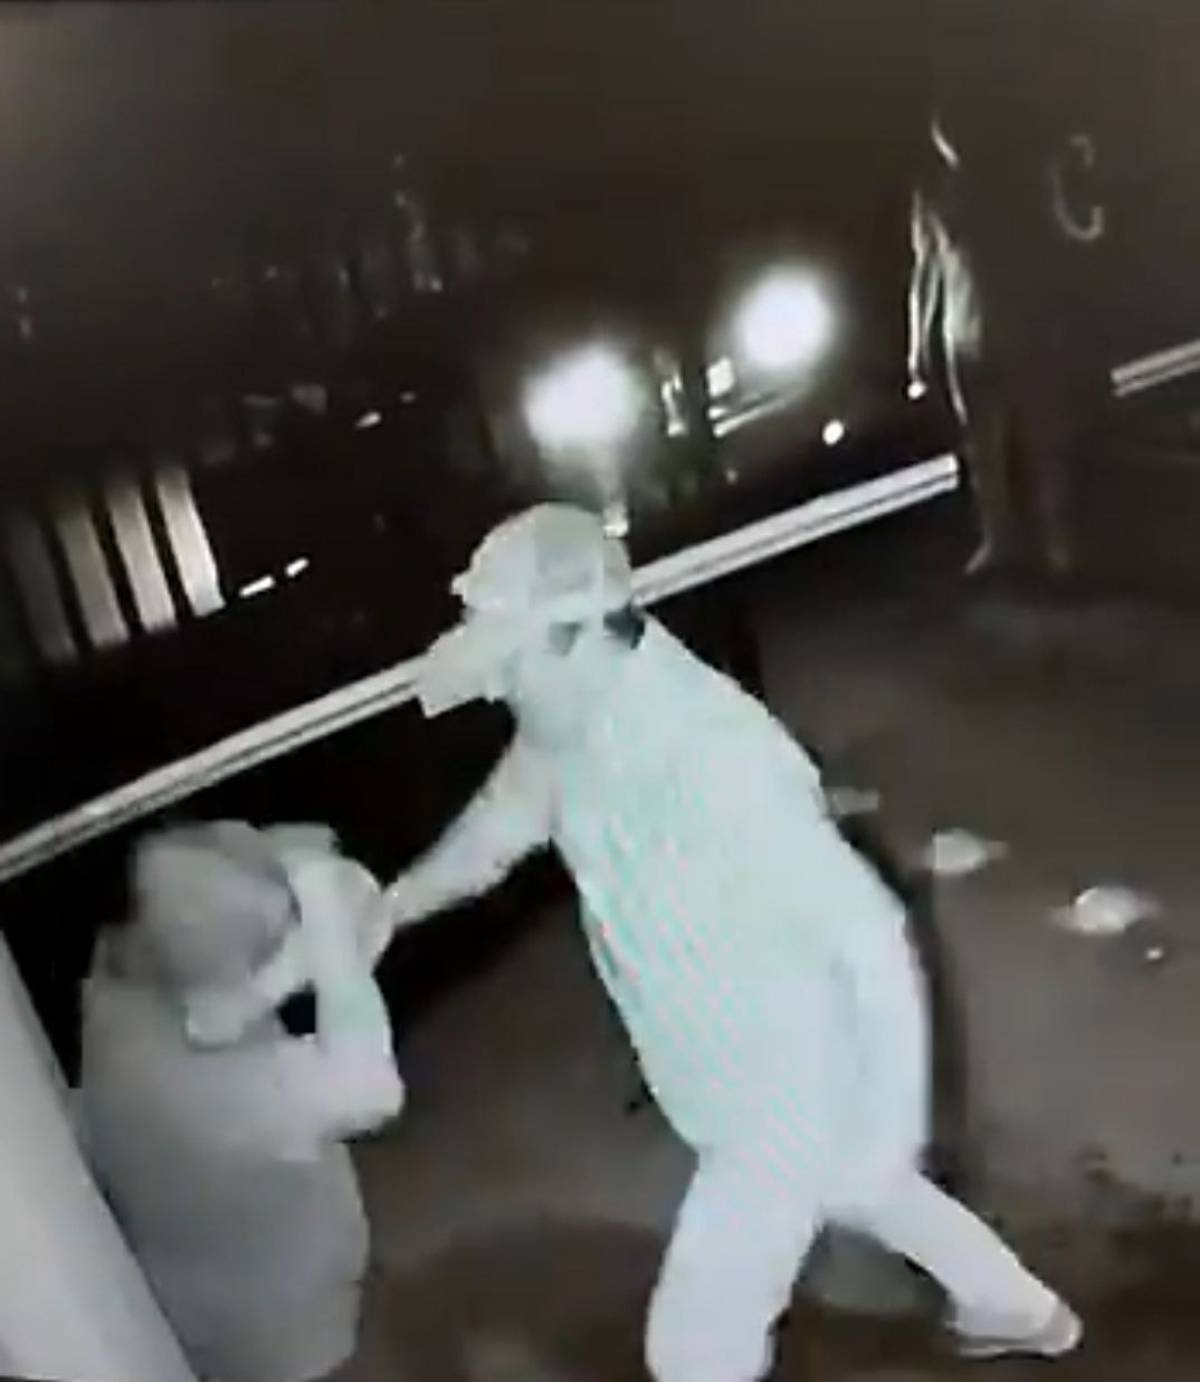 En redes sociales se compartió un video de seguridad en el que se observa cómo un adulto mayor recibe una golpiza por parte de un hombre más joven, en Apodaca, Nuevo León.